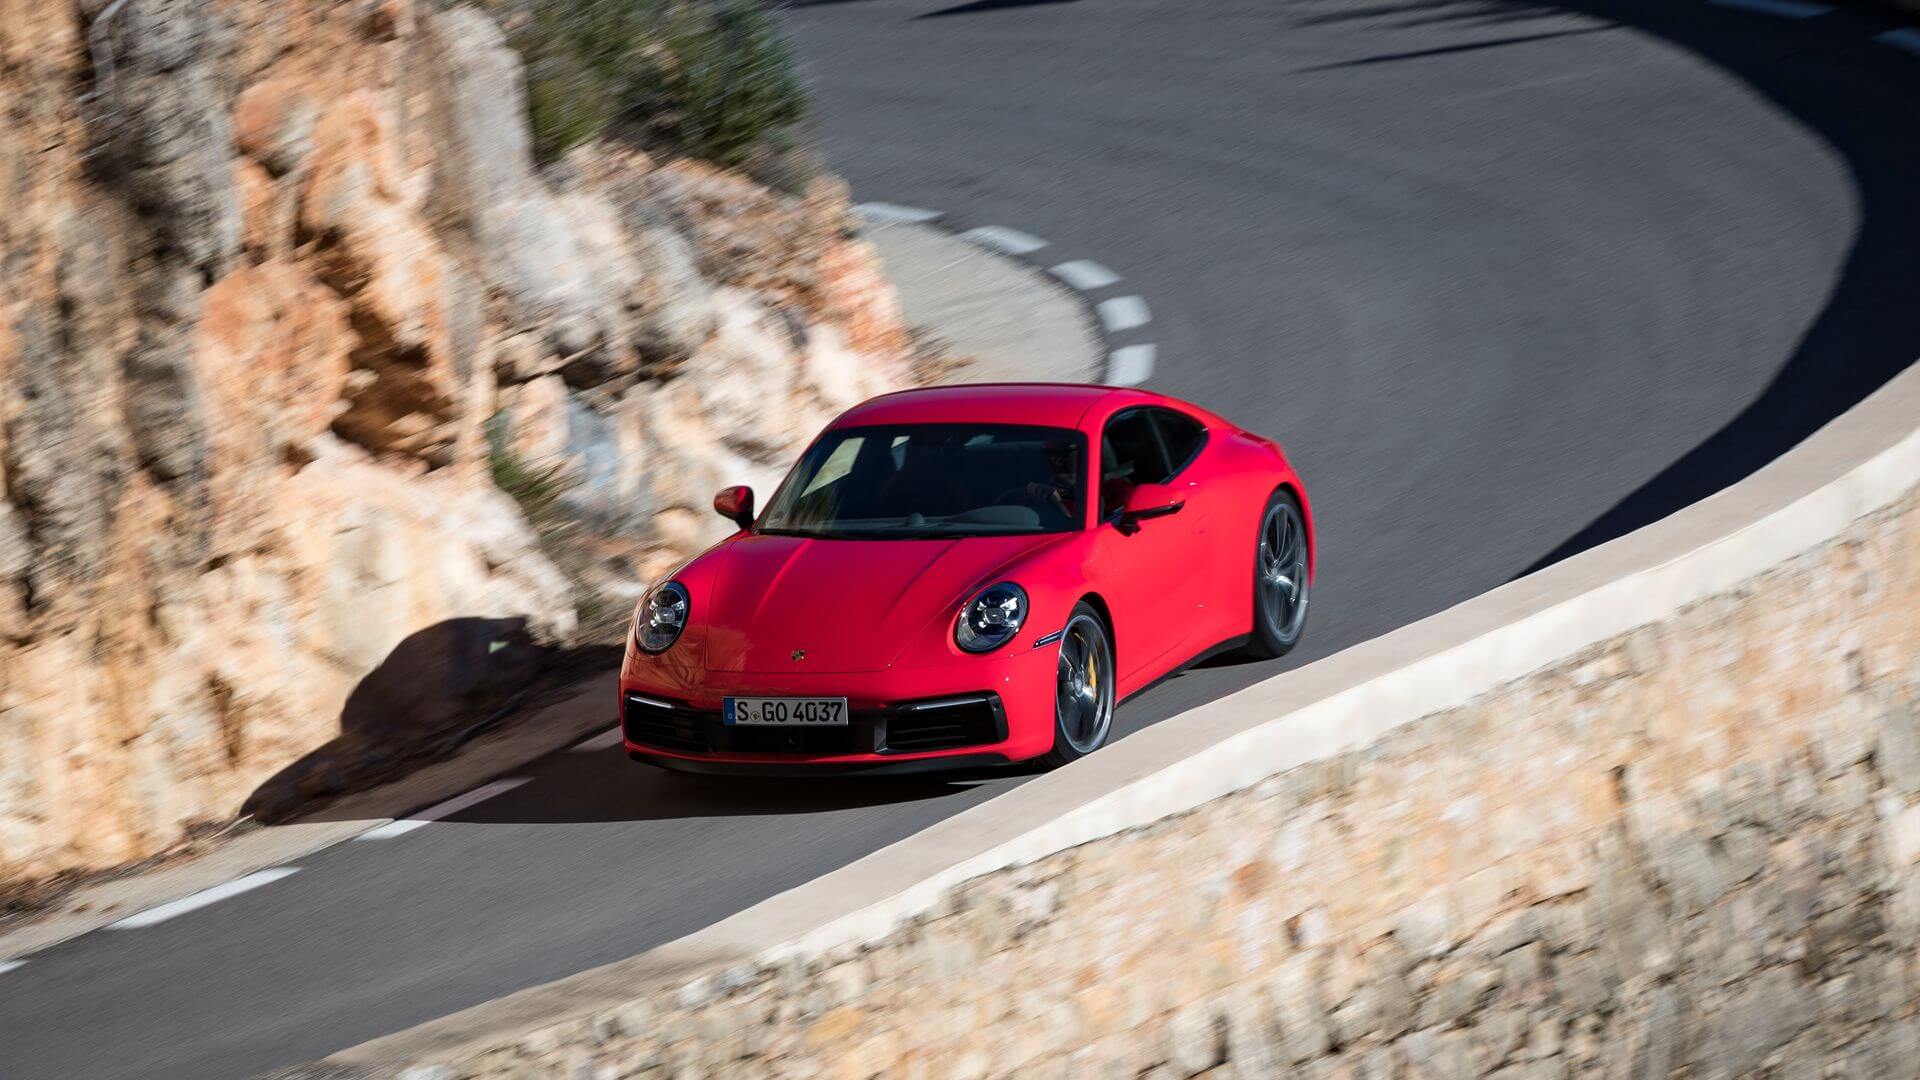 Πόσα θα πληρώσετε για να αποκτήσετε τη νέα Porsche 911;